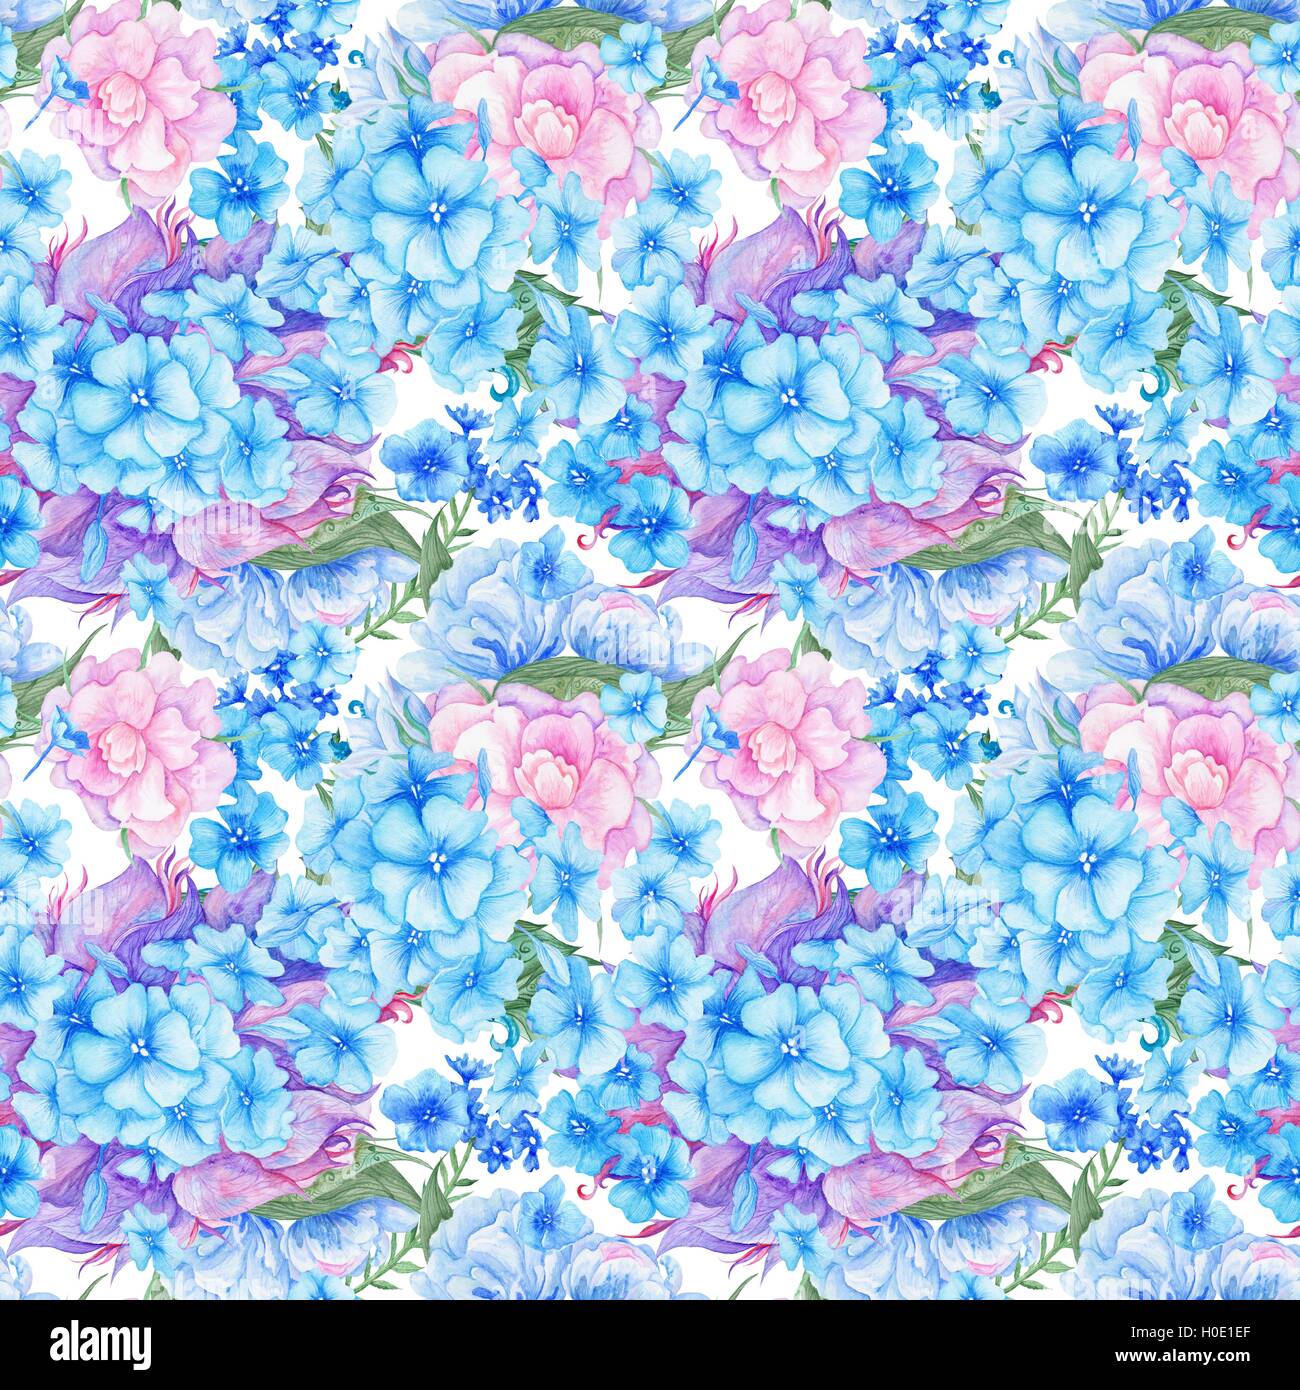 L'aquarelle transparente texture fleurs pour mariage, papier peint, design textile avec bleu et rose pivoine et hortensias Banque D'Images